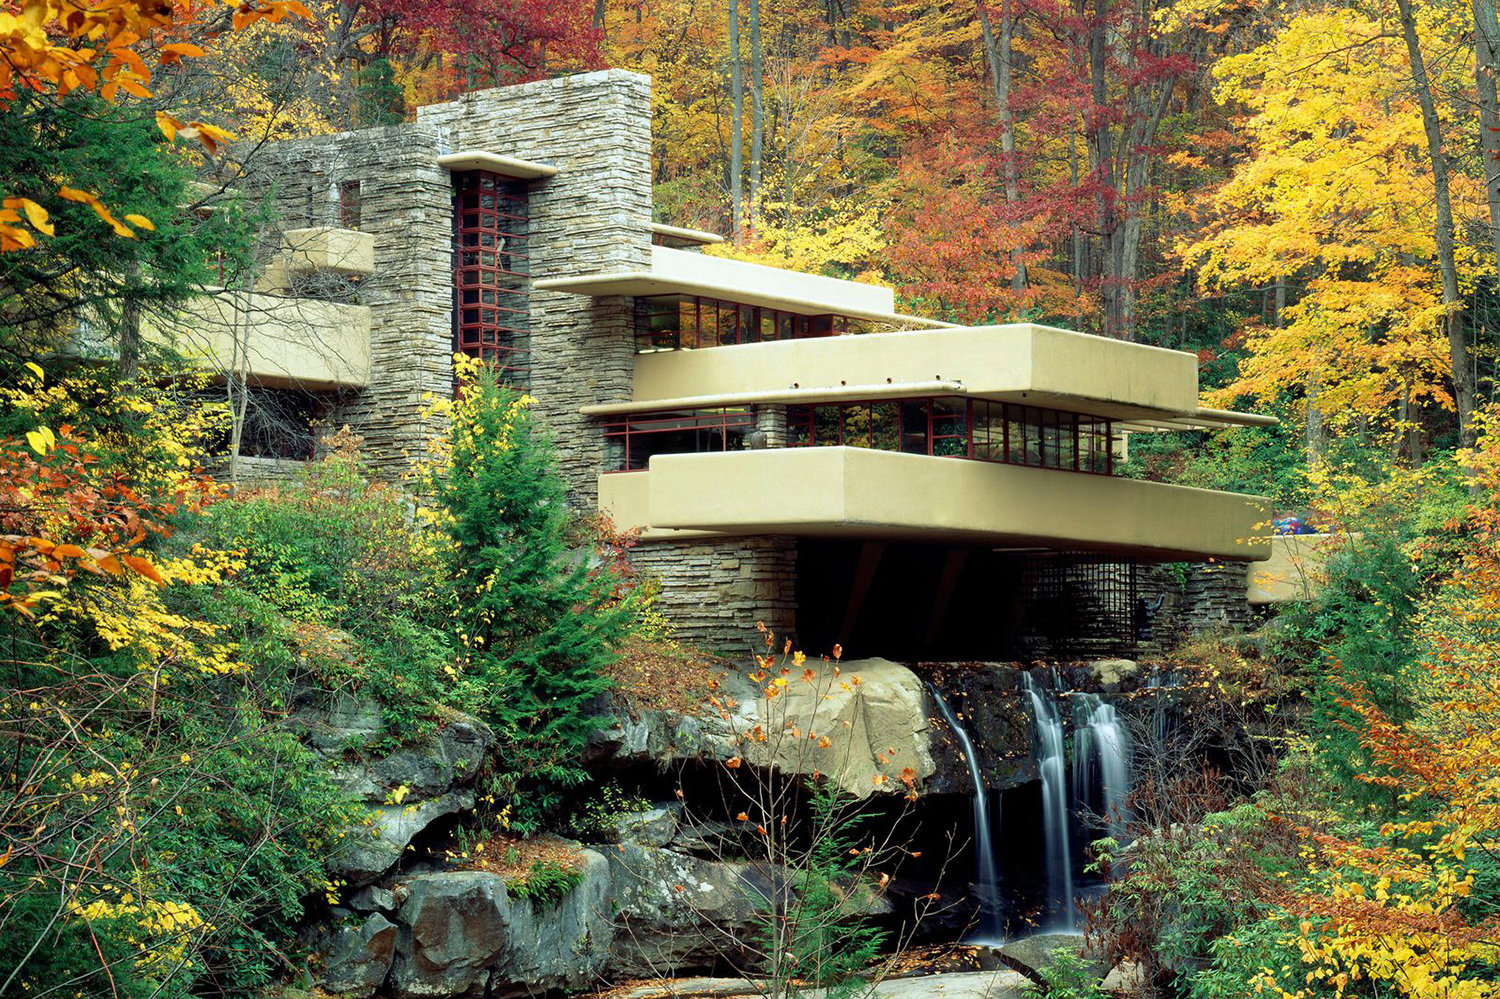 La residencia Kaufmann en Pensilvania, más conocida como Casa de la Cascada (1939) es el proyecto residencial más conocido de Frank Lloyd Wright.